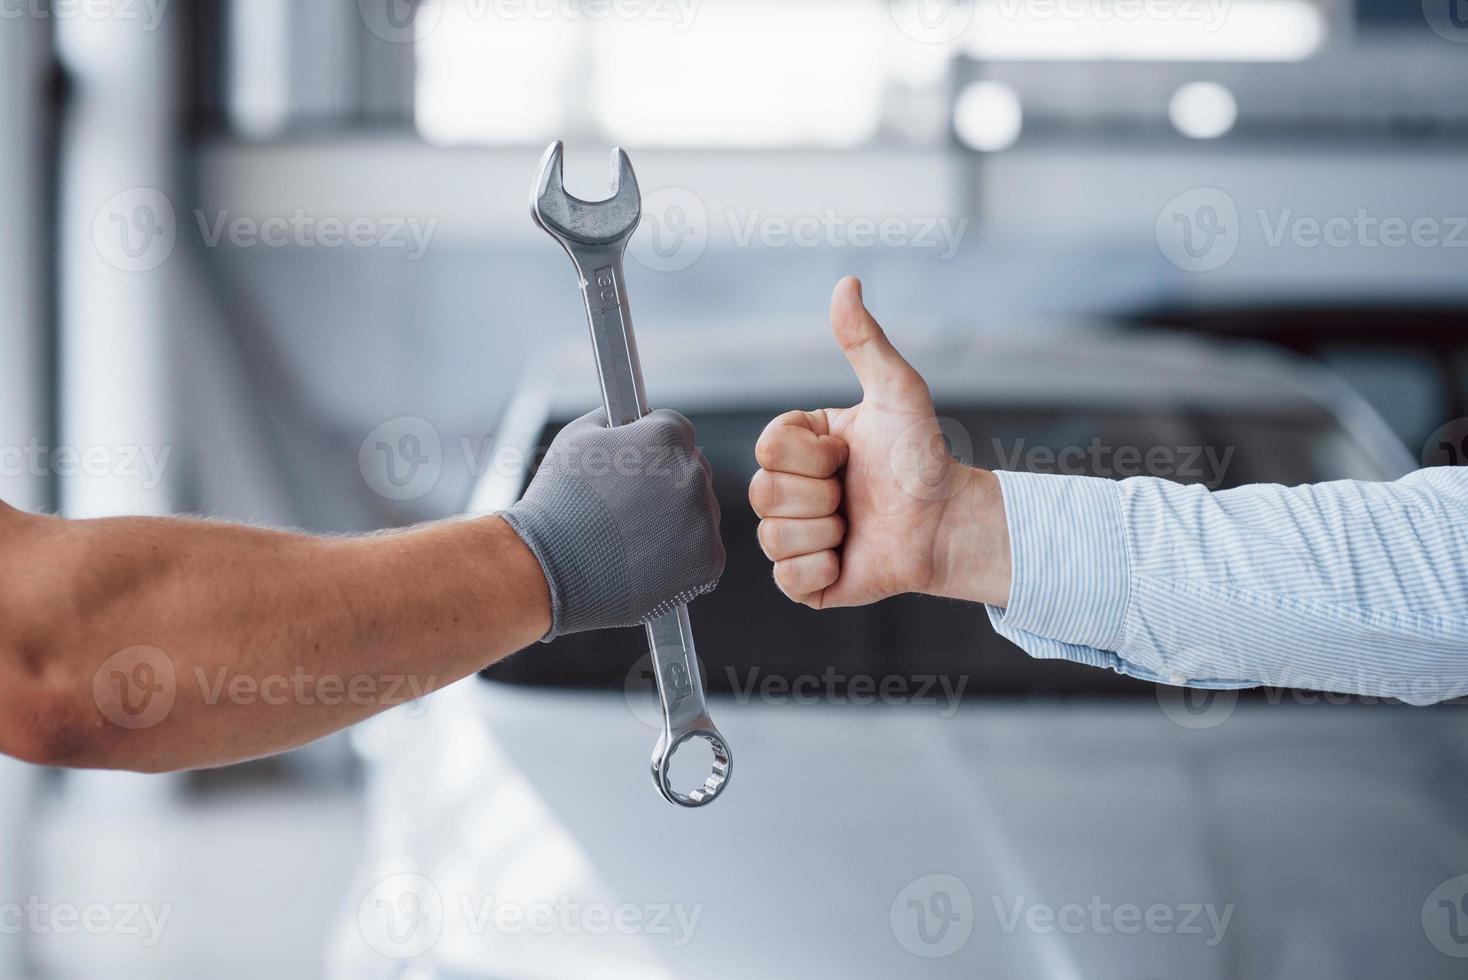 de automonteur houdt de sleutel in de hand van de klant en heft zijn duim op. goed gedaan werk foto